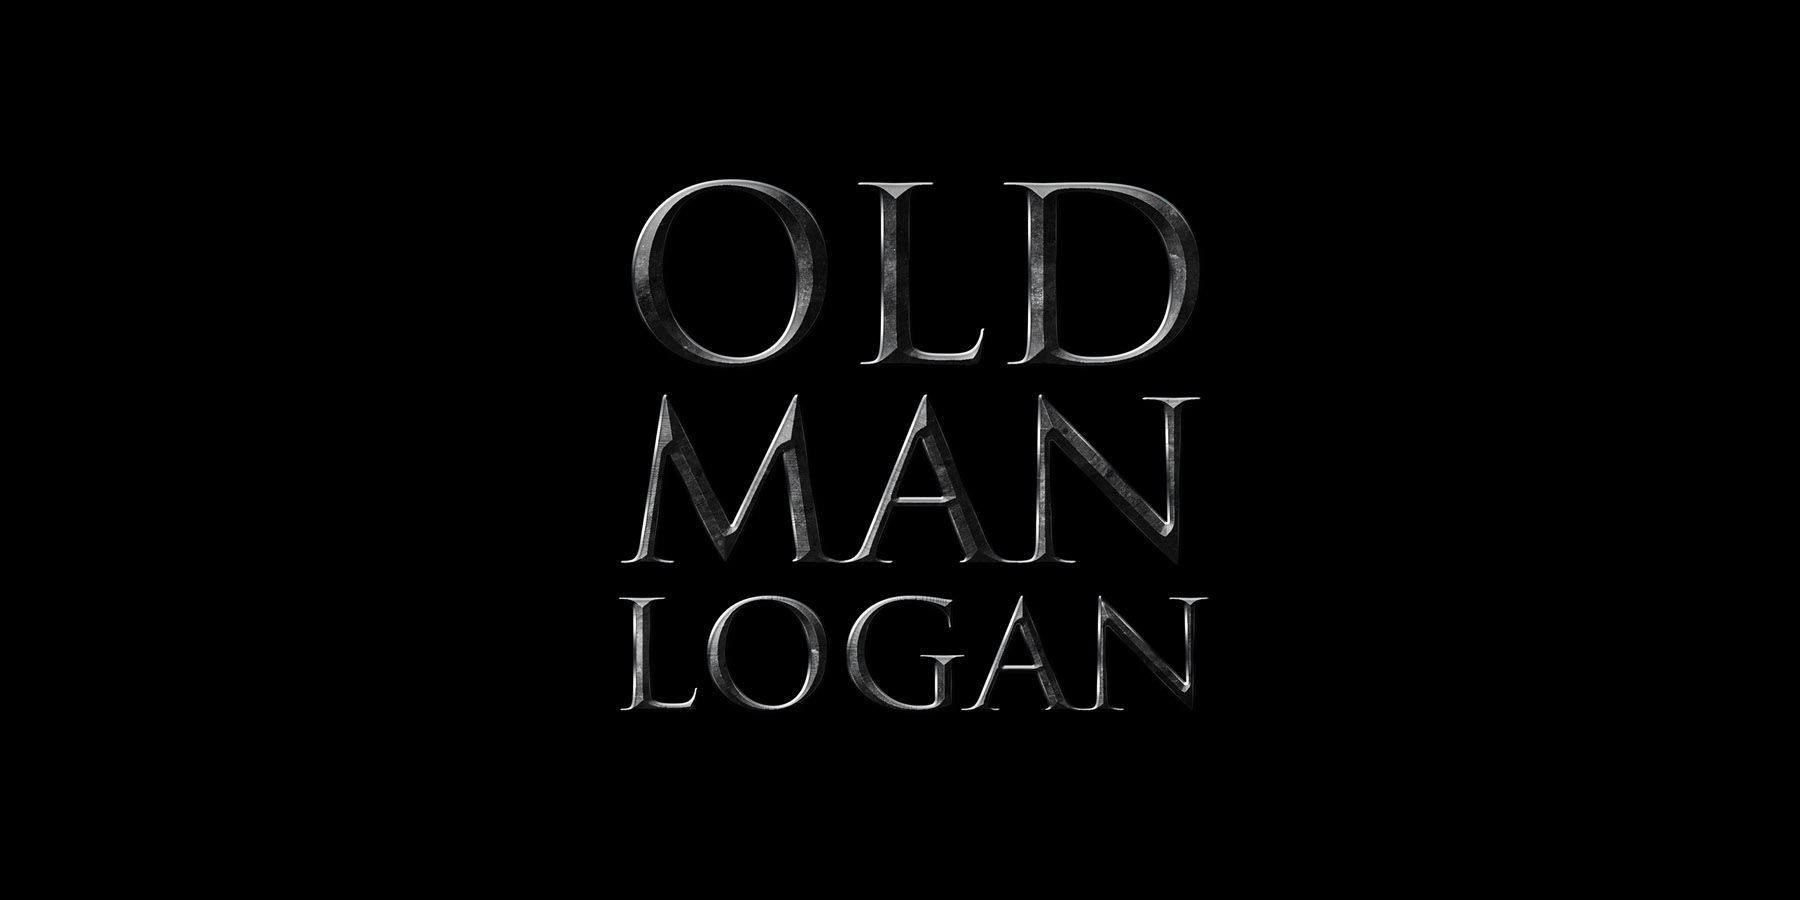 Old Man Logan (Wolverine 3) Logo by Joe Steiner